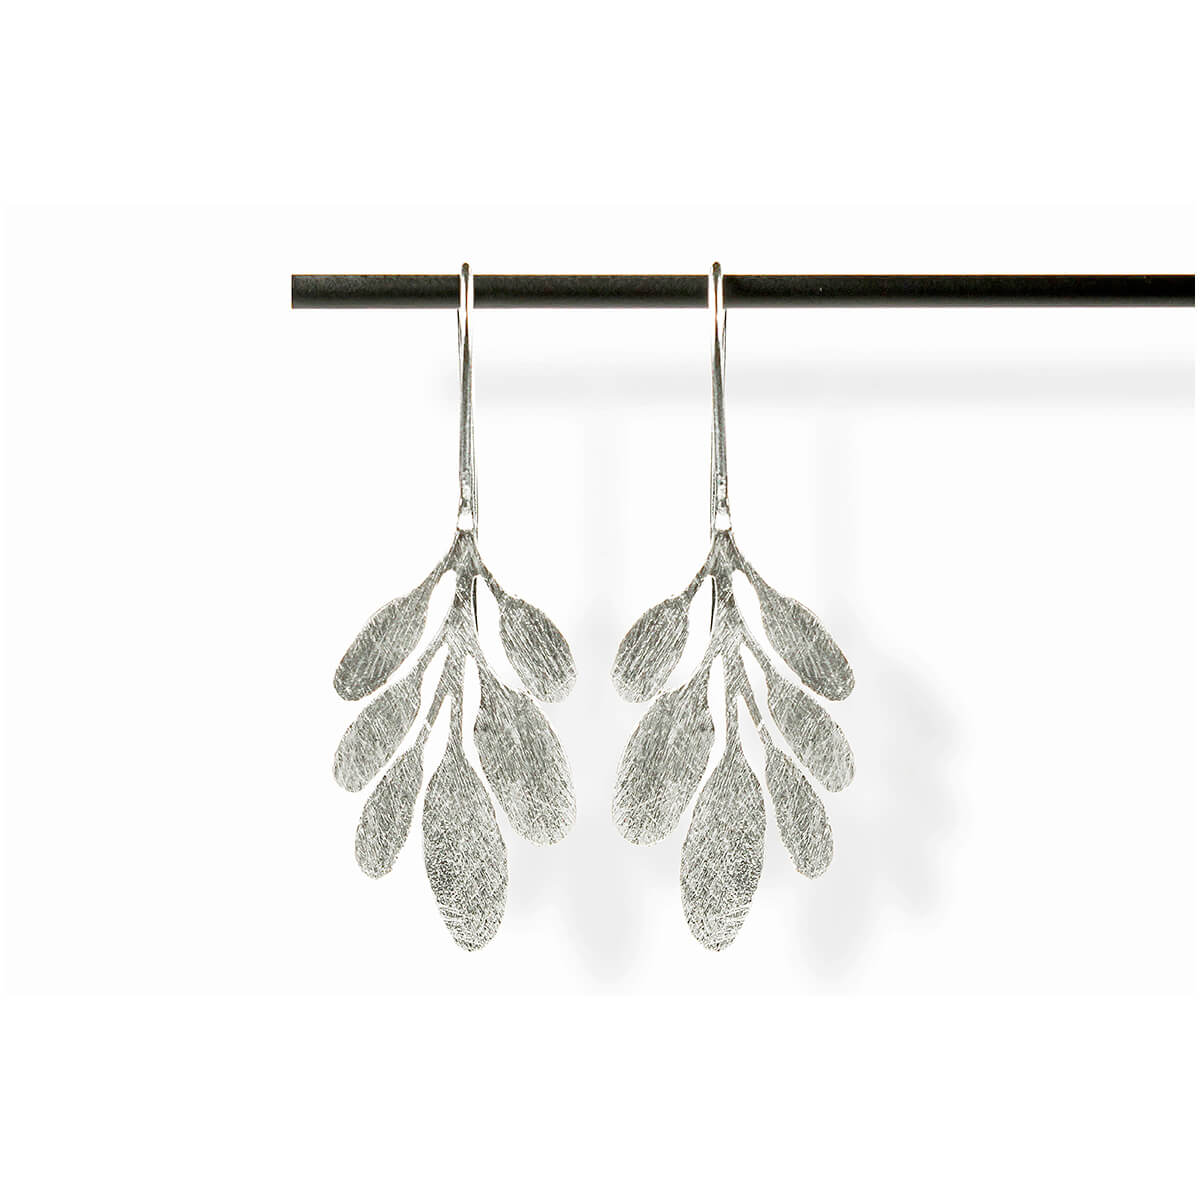 Avalbane earrings - Silver